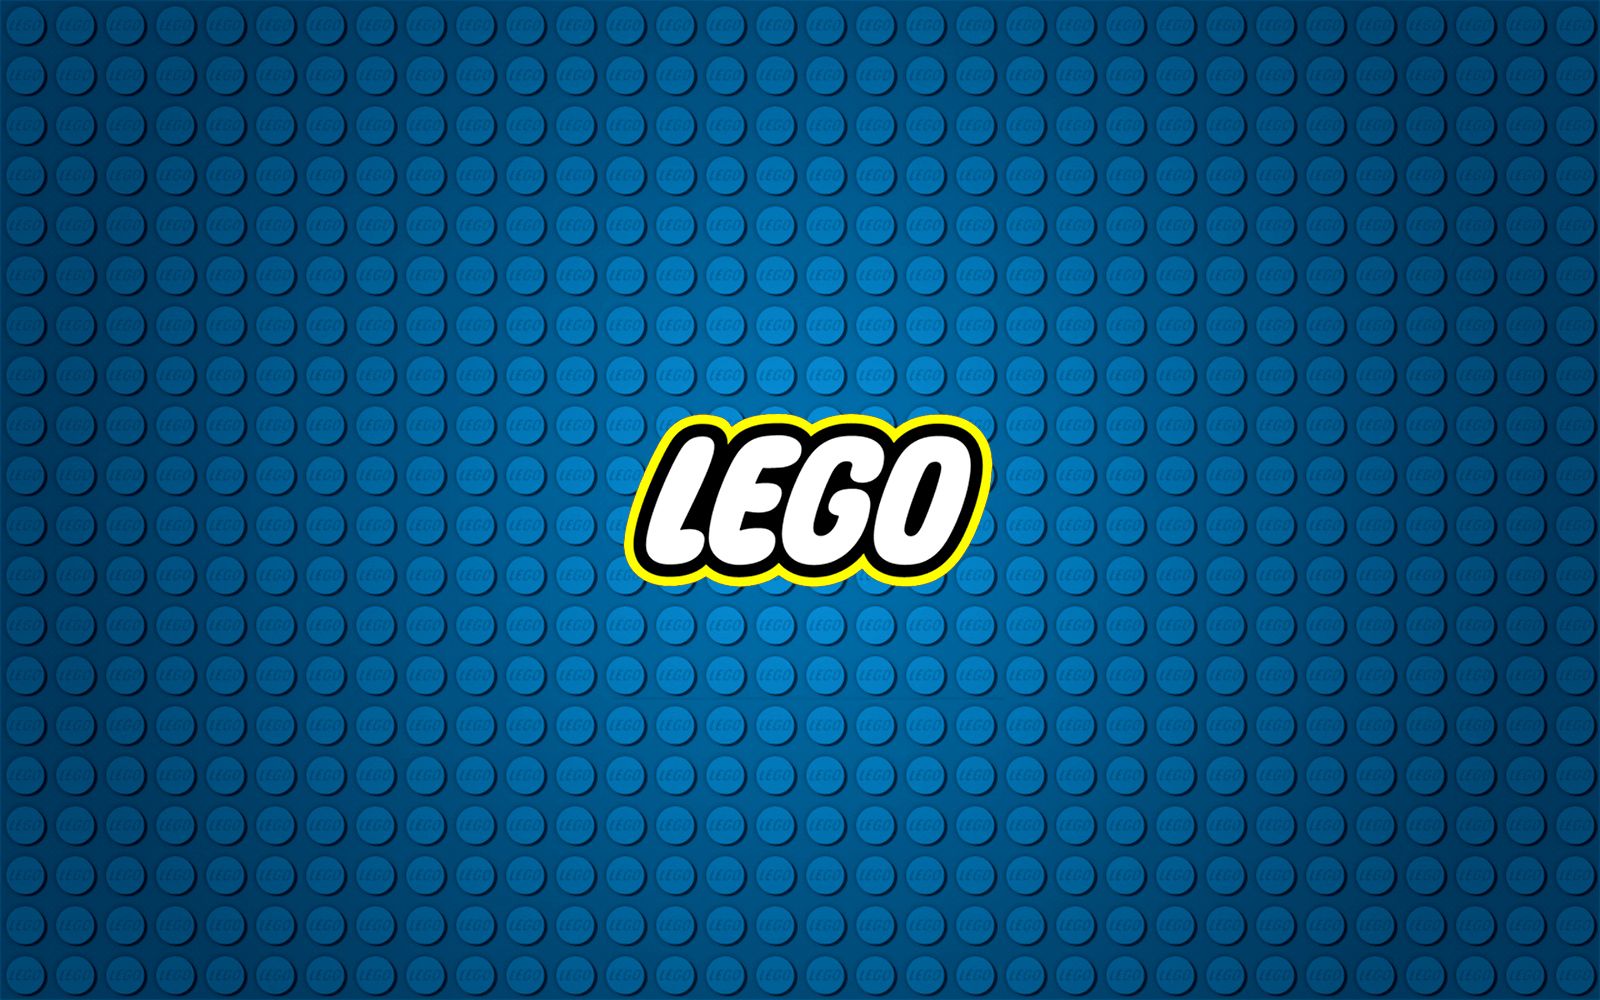 Lego Background High Quality Image